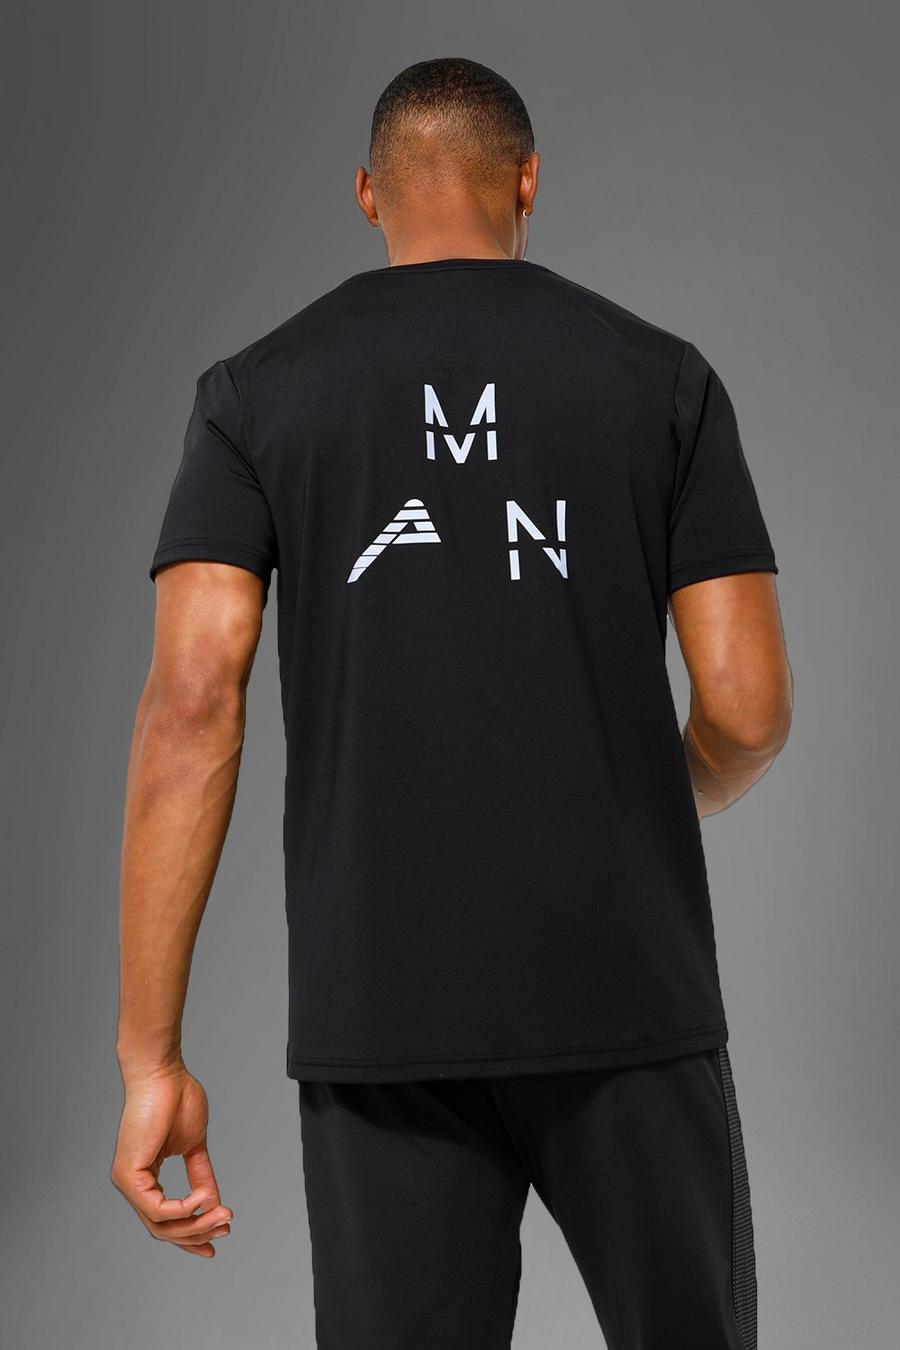 Camiseta MAN Active deportiva con estampado reflectante en la espalda, Black negro